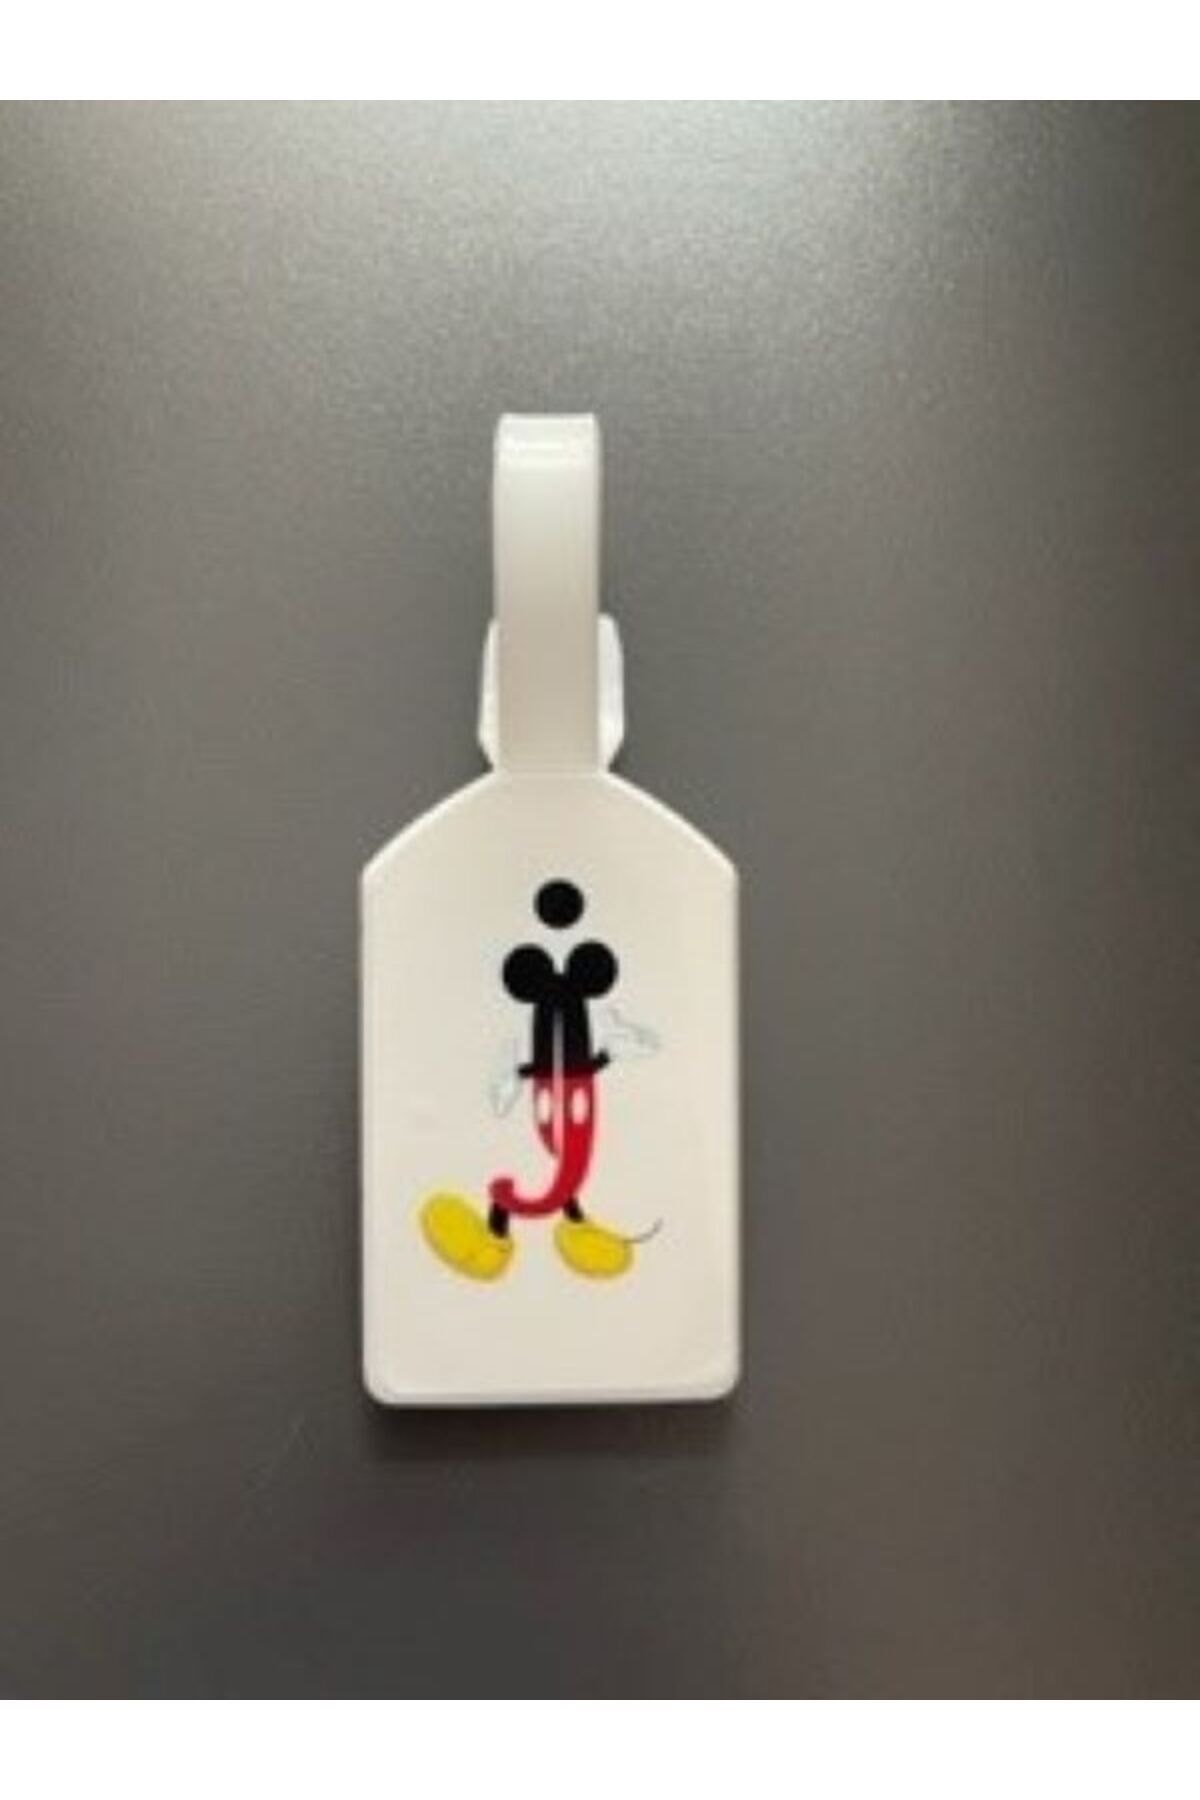 Seyahataksesuar Seyahat aksesuar Mickey tasarımlı harfler bagaj çanta bavul etiketi